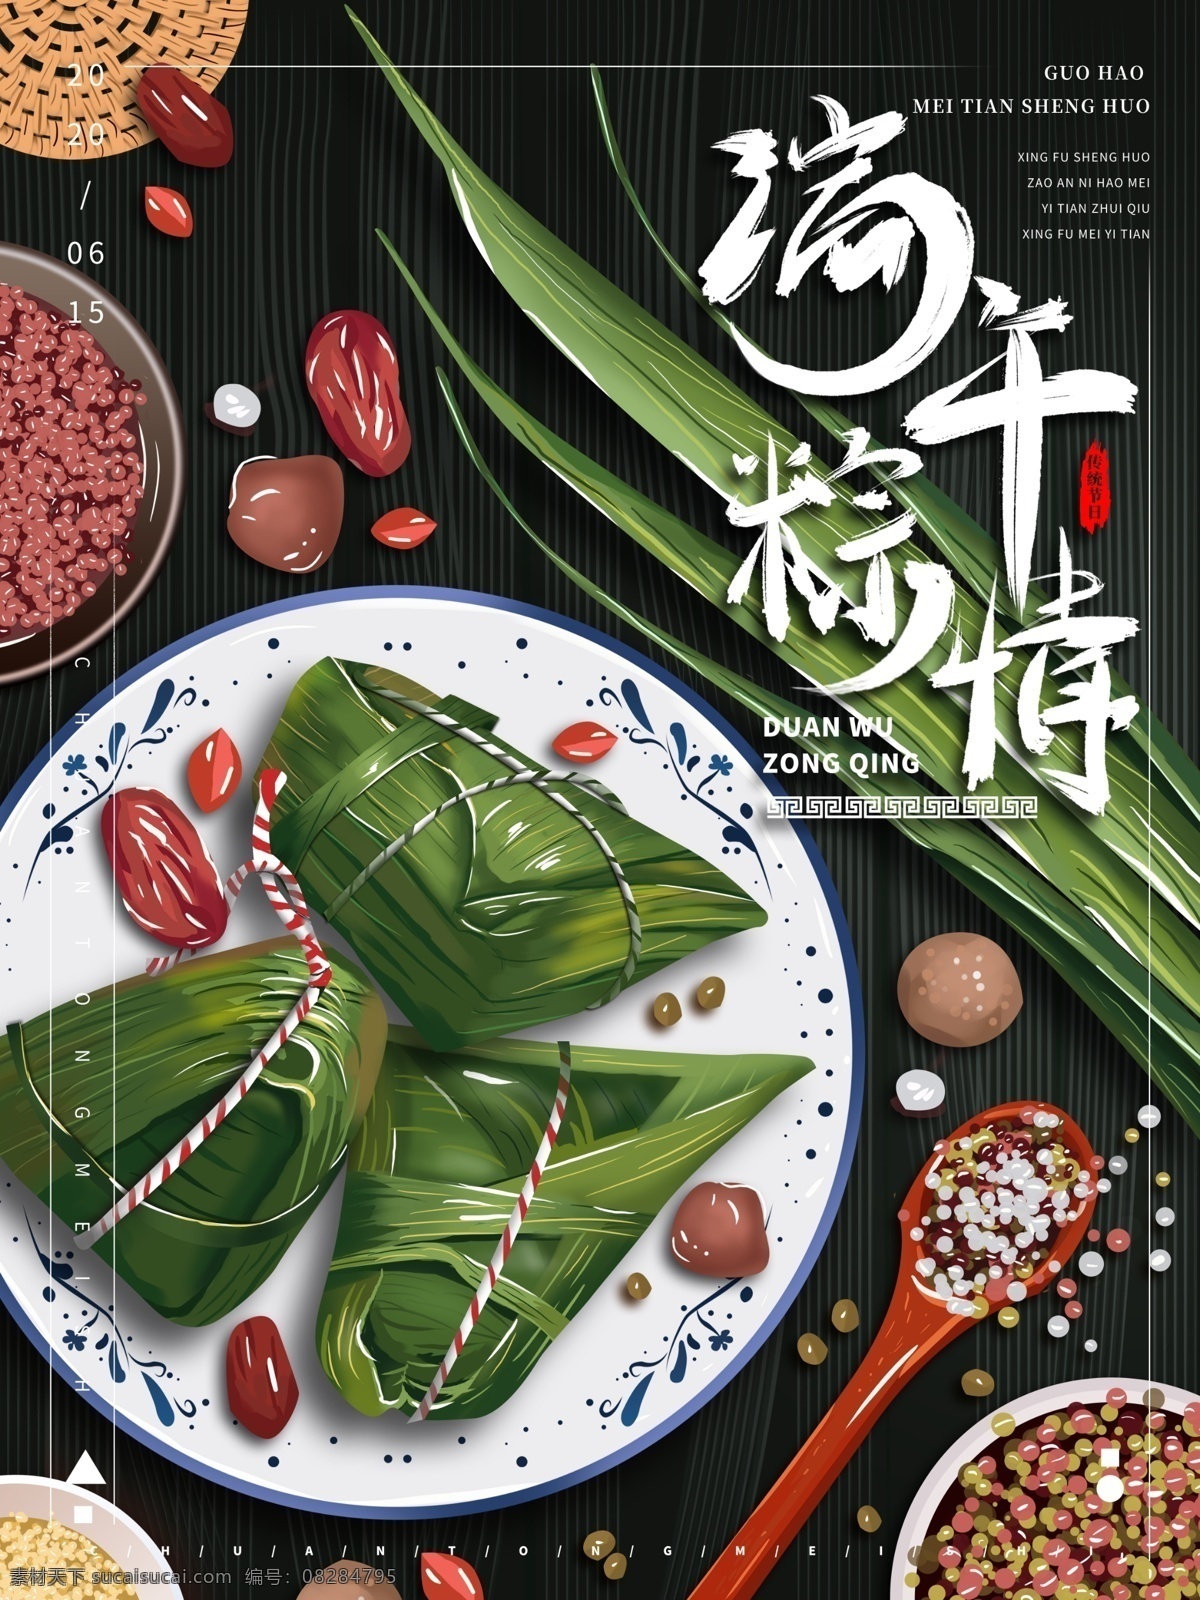 端午 五月初五 粽子 粽子节 端午节 包粽子 屈原 赛龙舟 肉粽 甜粽 商场 广告宣传 分层